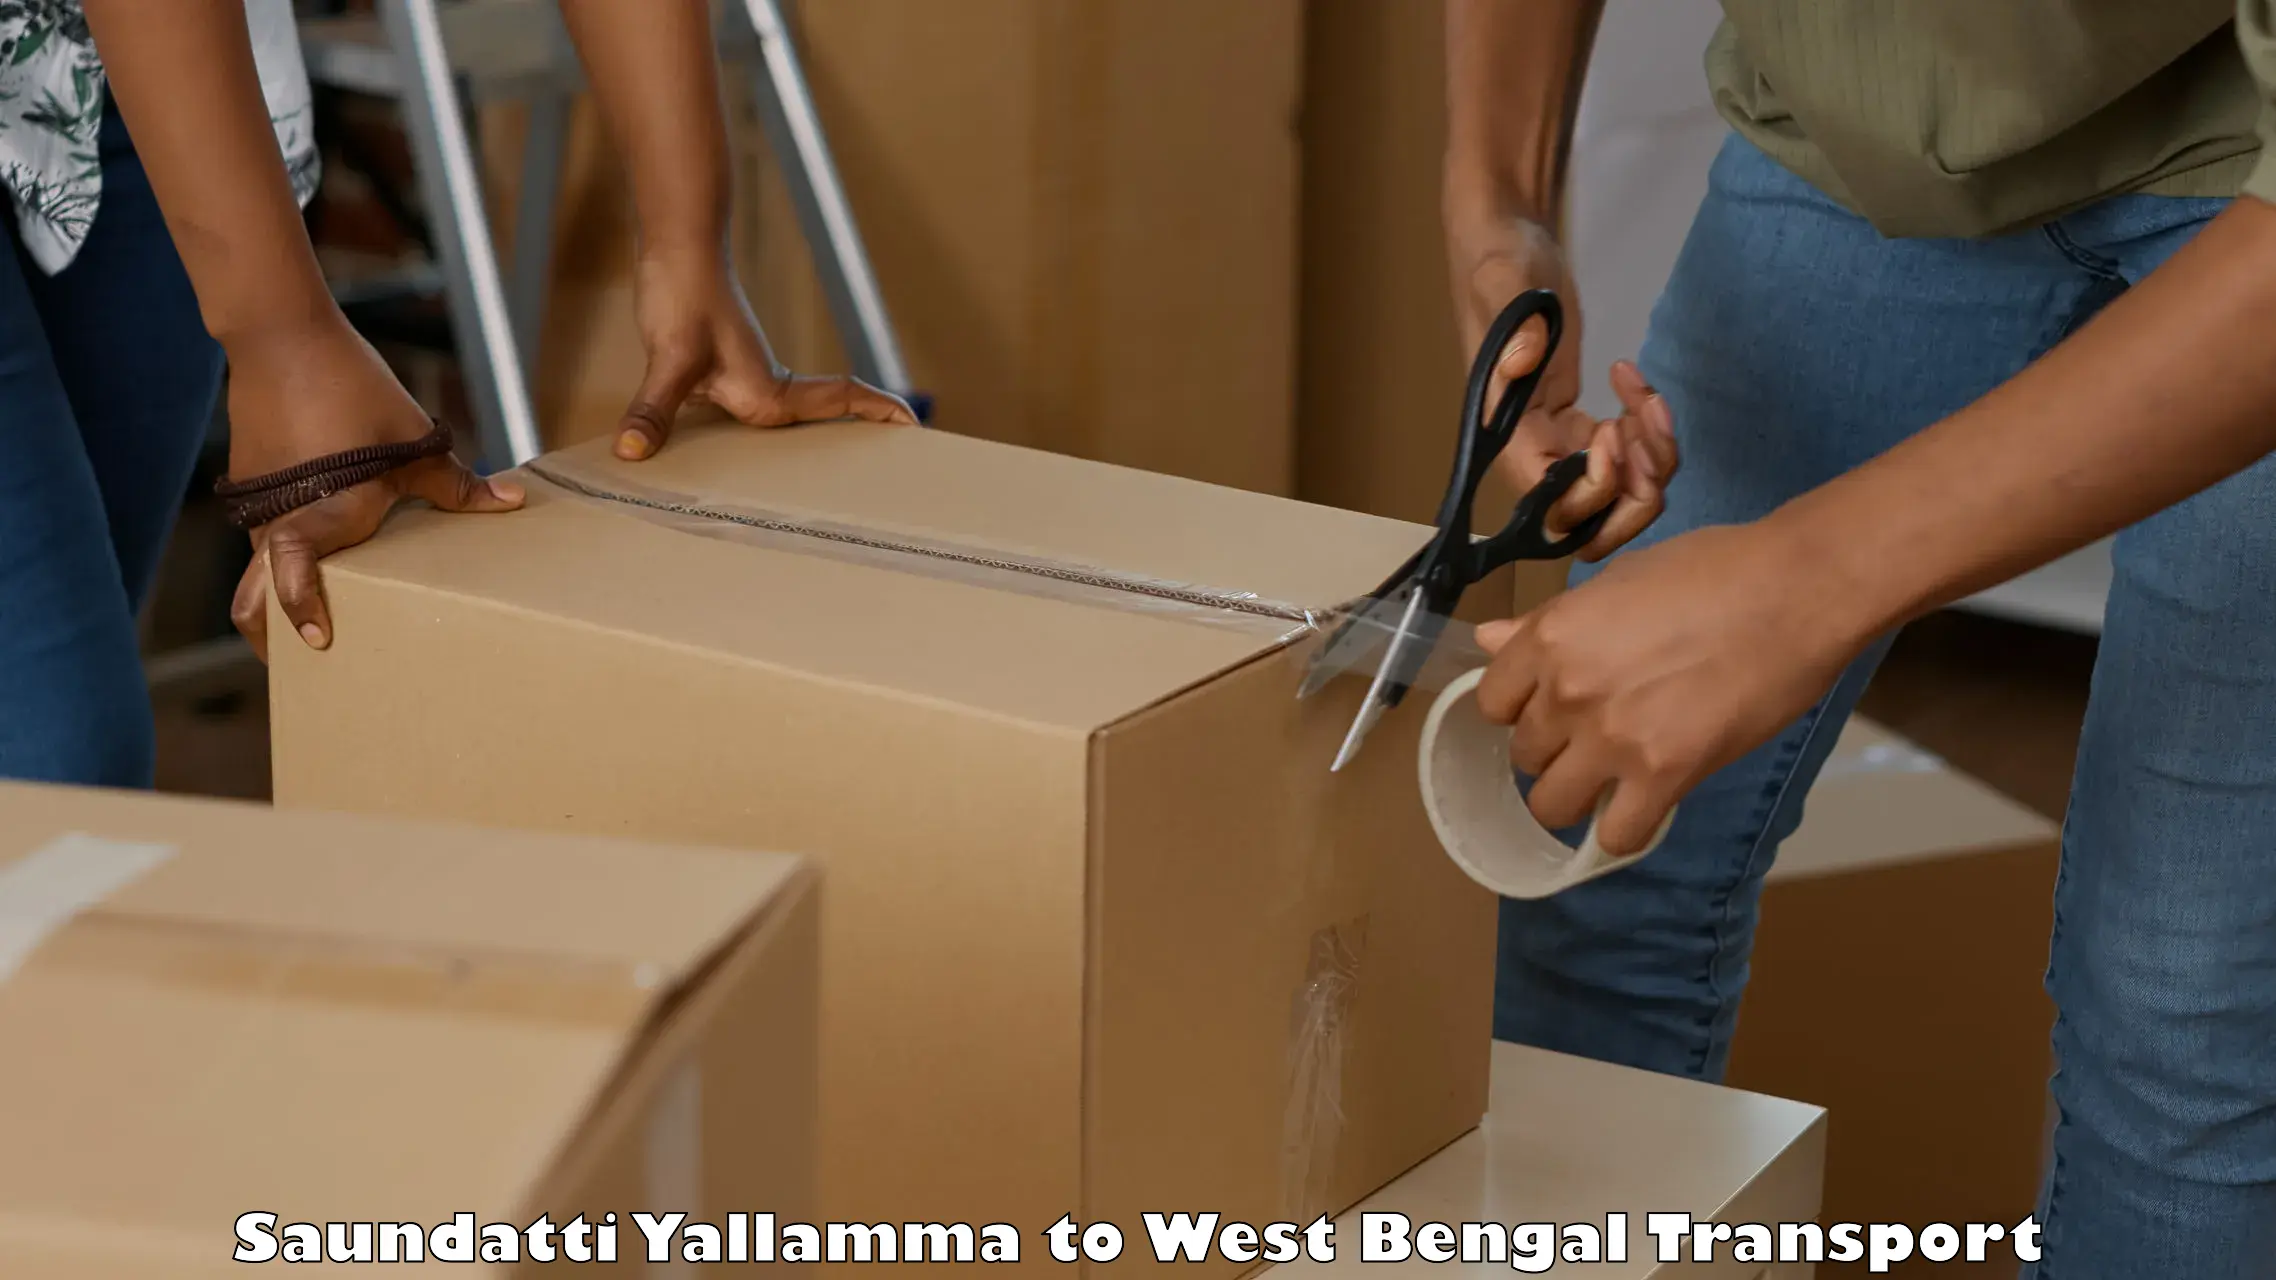 Furniture transport service Saundatti Yallamma to Bijanbari